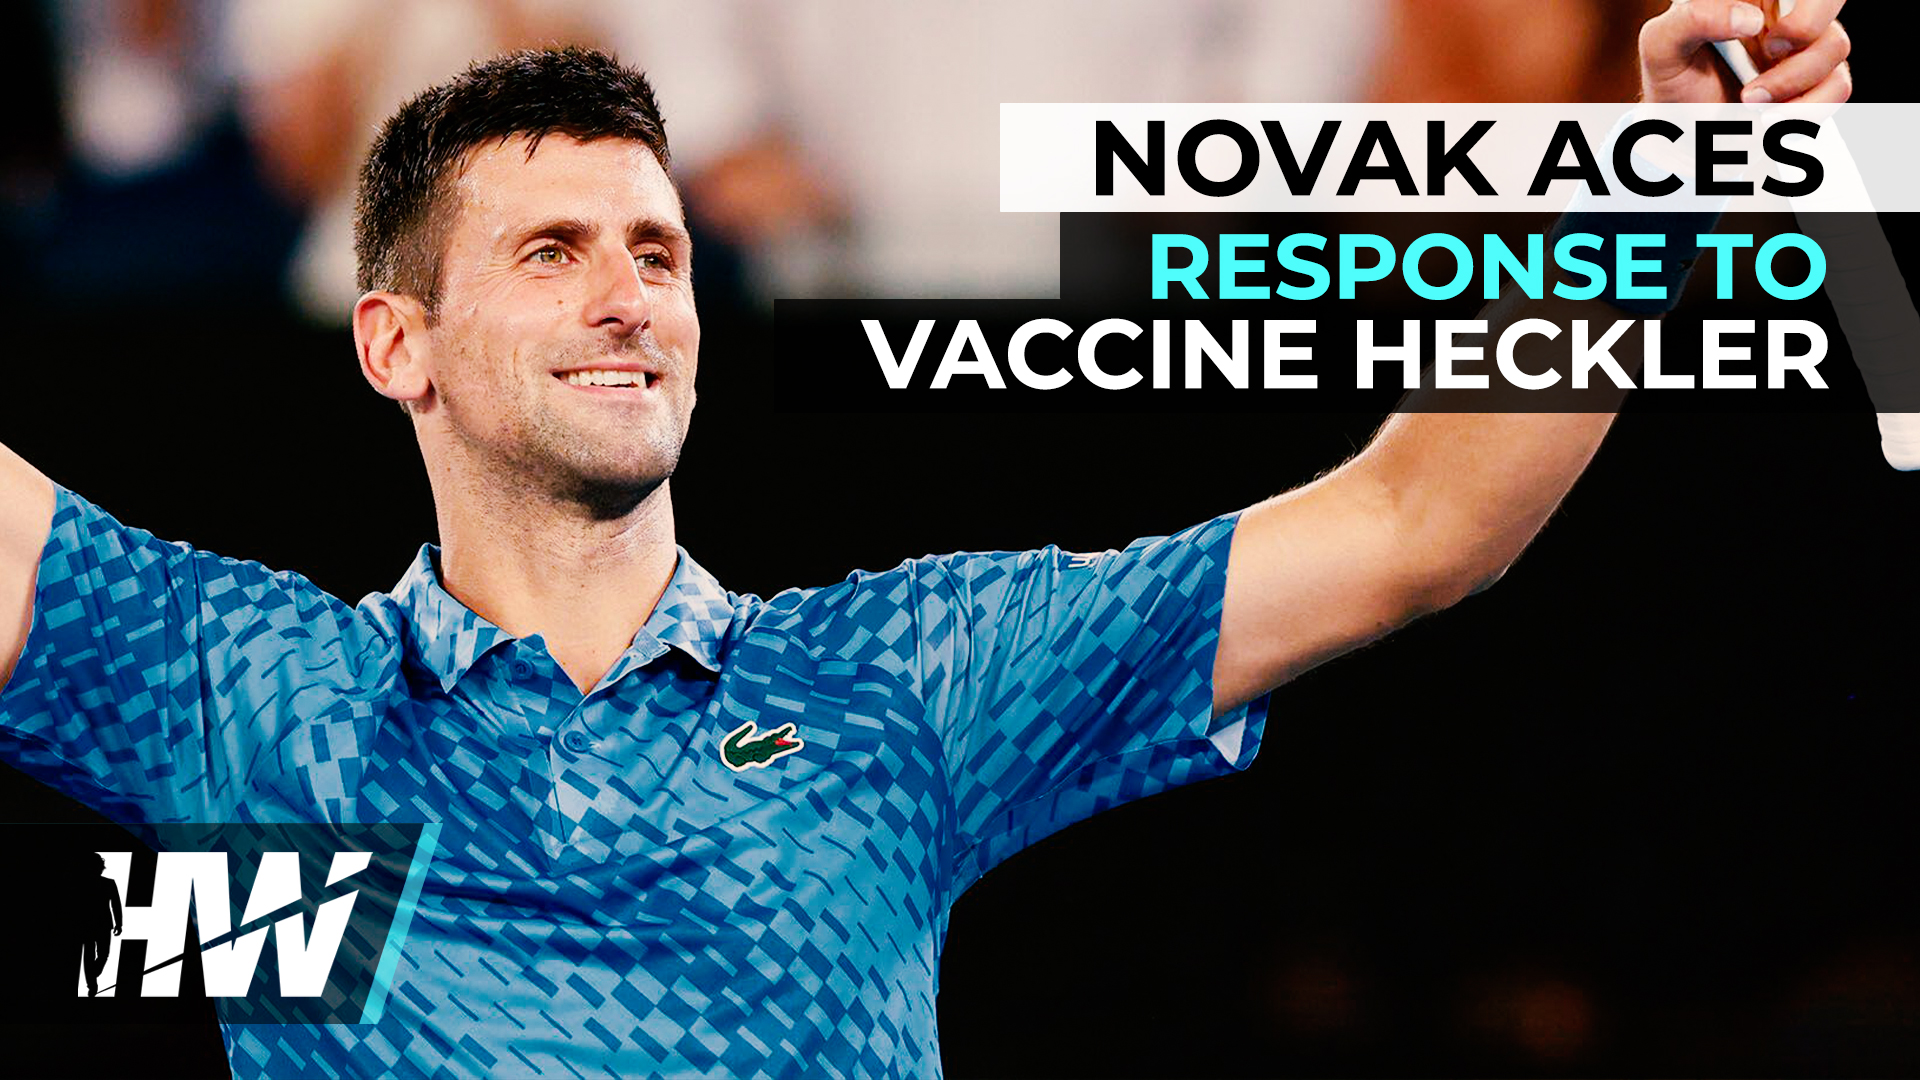 The Highwire - Tennisser Novak Djokovic rekent stijlvol af met vaccinpusher uit publiek